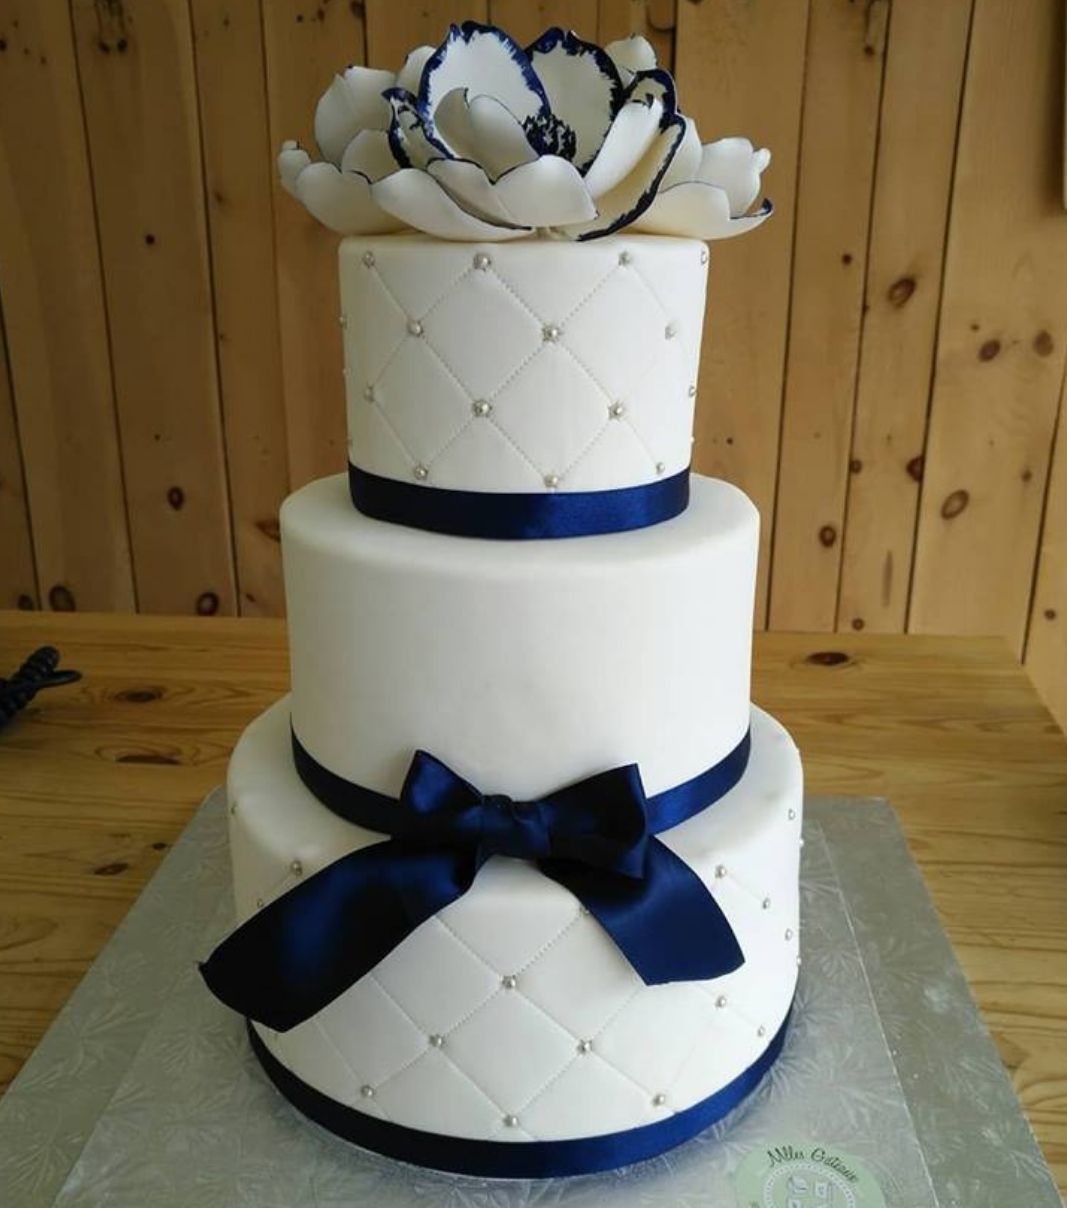 Gâteau de mariage: gâteau de 3 étages à thème blanc et marine, avec une couverture fondante à effet matelassé (quilting) décoré de perles argentées, de fleurs en sucre et de rubans de tissu marine.